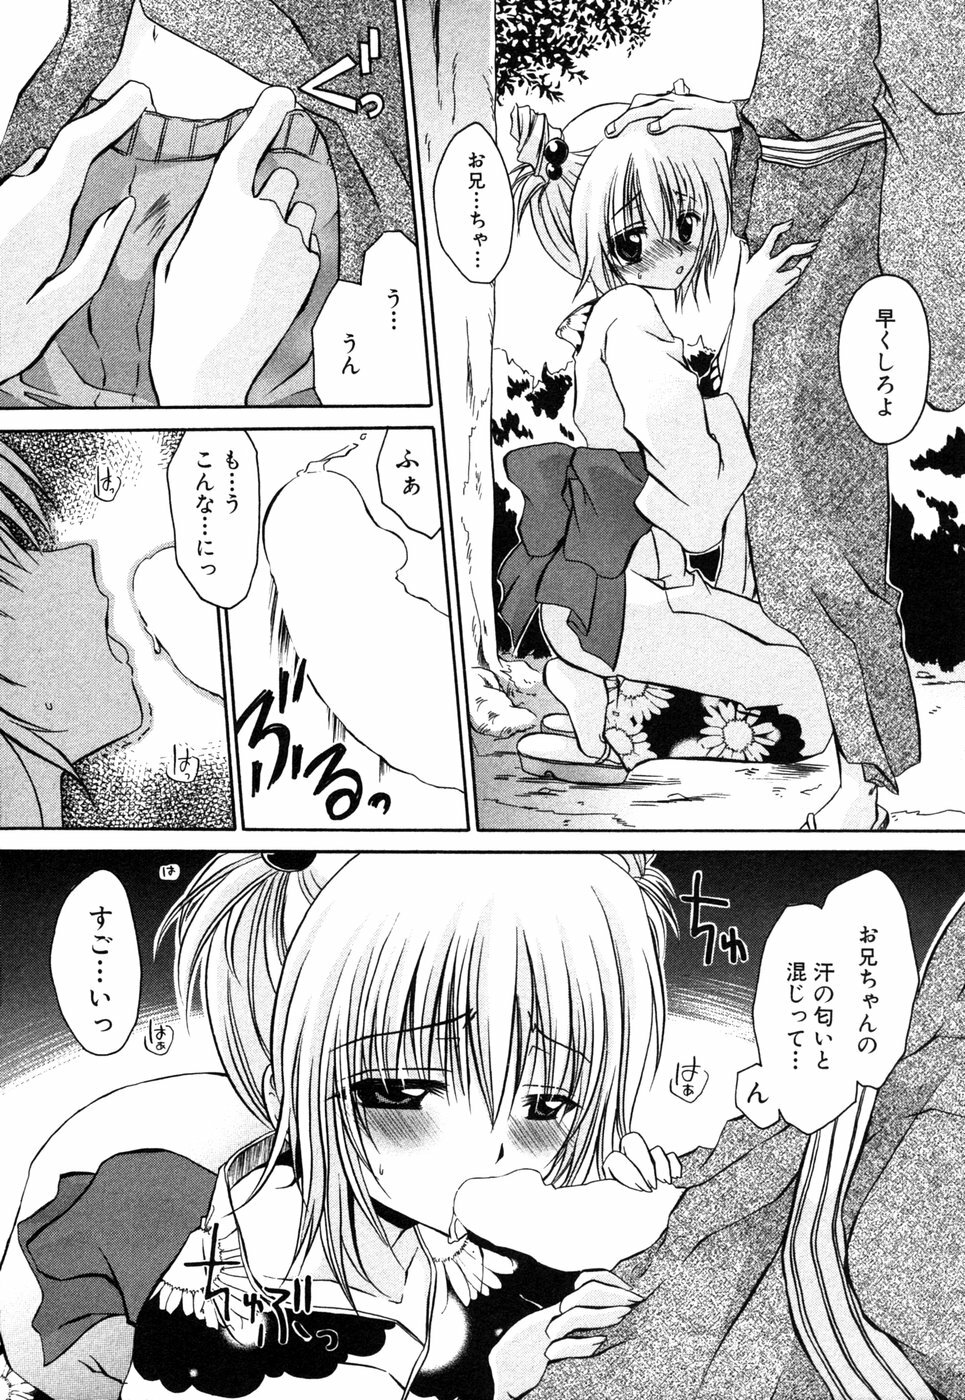 [Anthology] Himitsu no Tobira 5 Kinshin Ai Anthology (The Secret Door) page 11 full